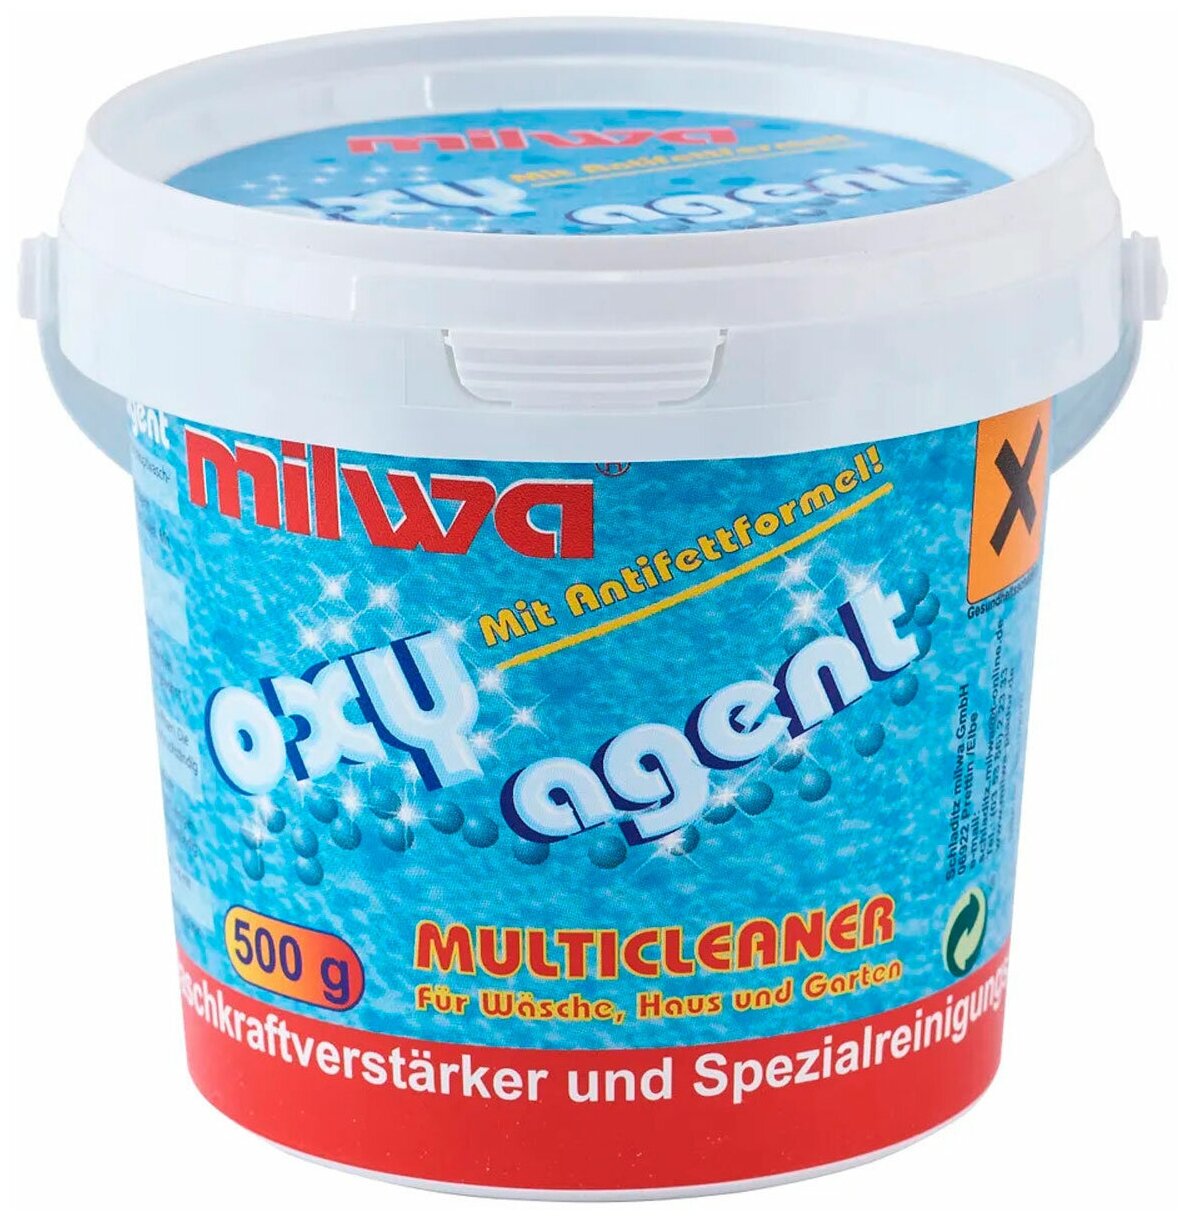 Пятновыводитель MILWA Oxy Agent (500 гр), порошковый, кислородный, универсальный, для цветных и светлых тканей